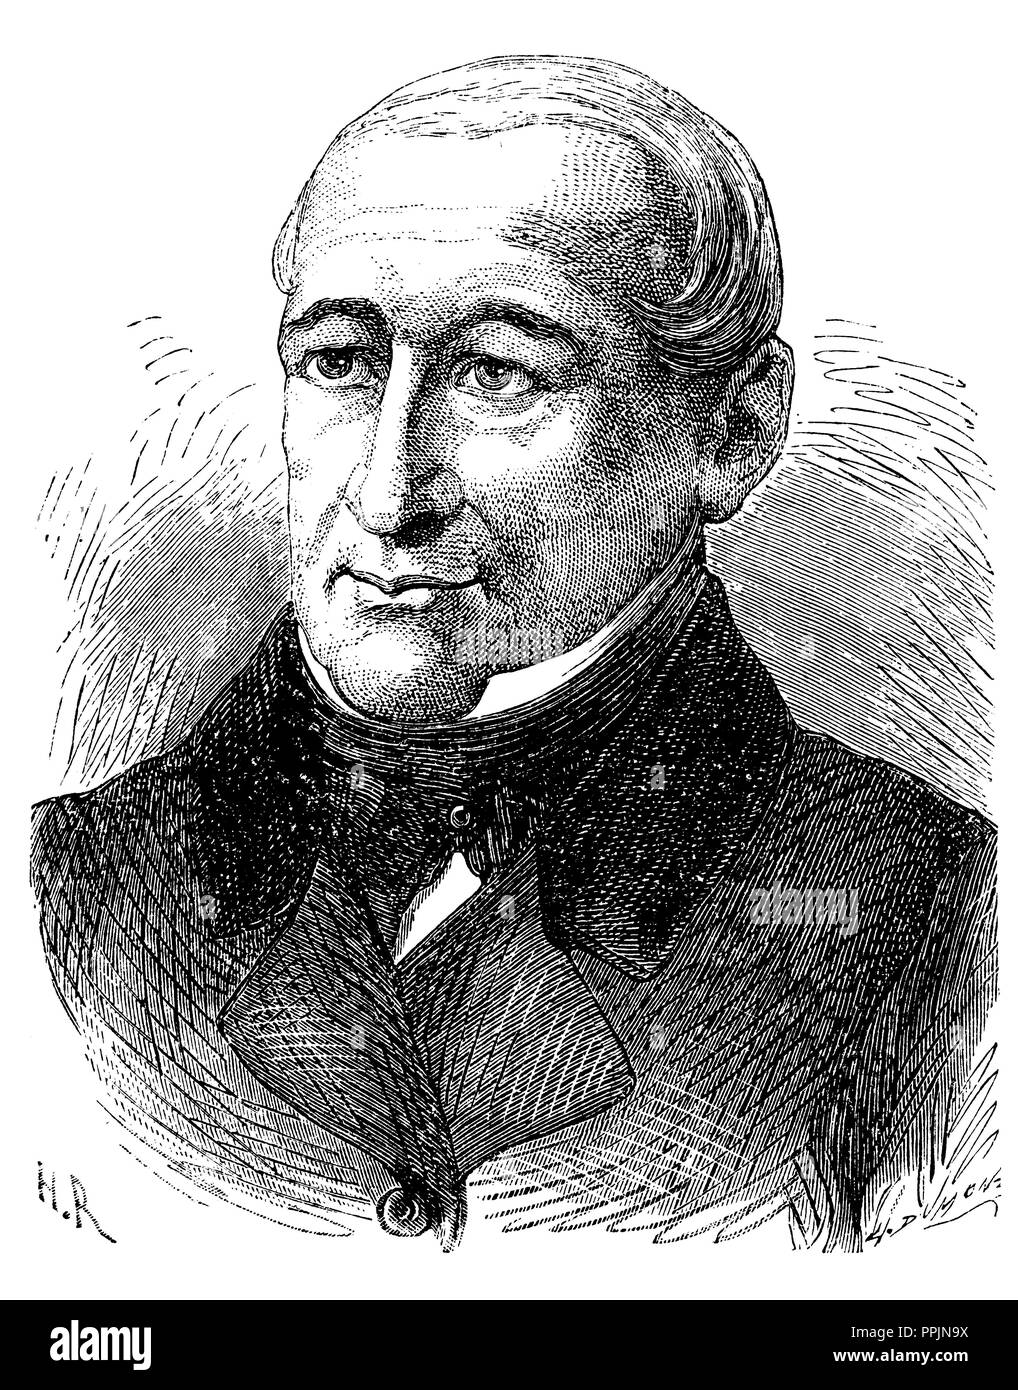 Johann Nikolaus von Dreyse (1787-1867), German gunsmith, inventor of the needle gun. Engraving, 1873. Stock Photo